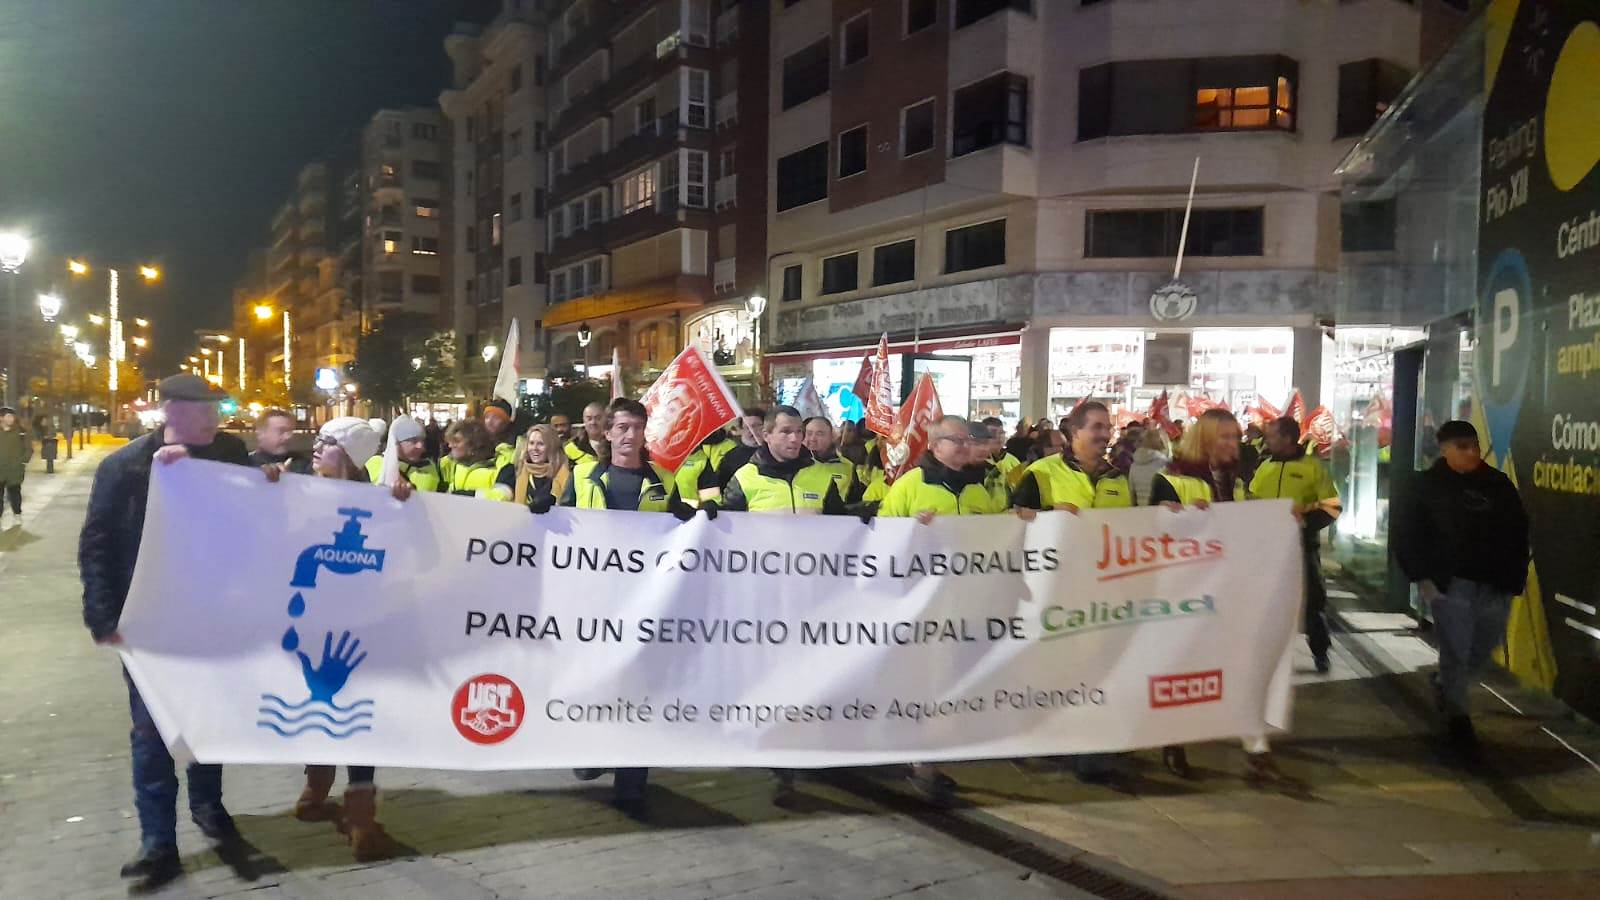 Los trabajadores de Aquona Palencia persisten en sus reclamaciones por un salario digno y unas condiciones de trabajo justas